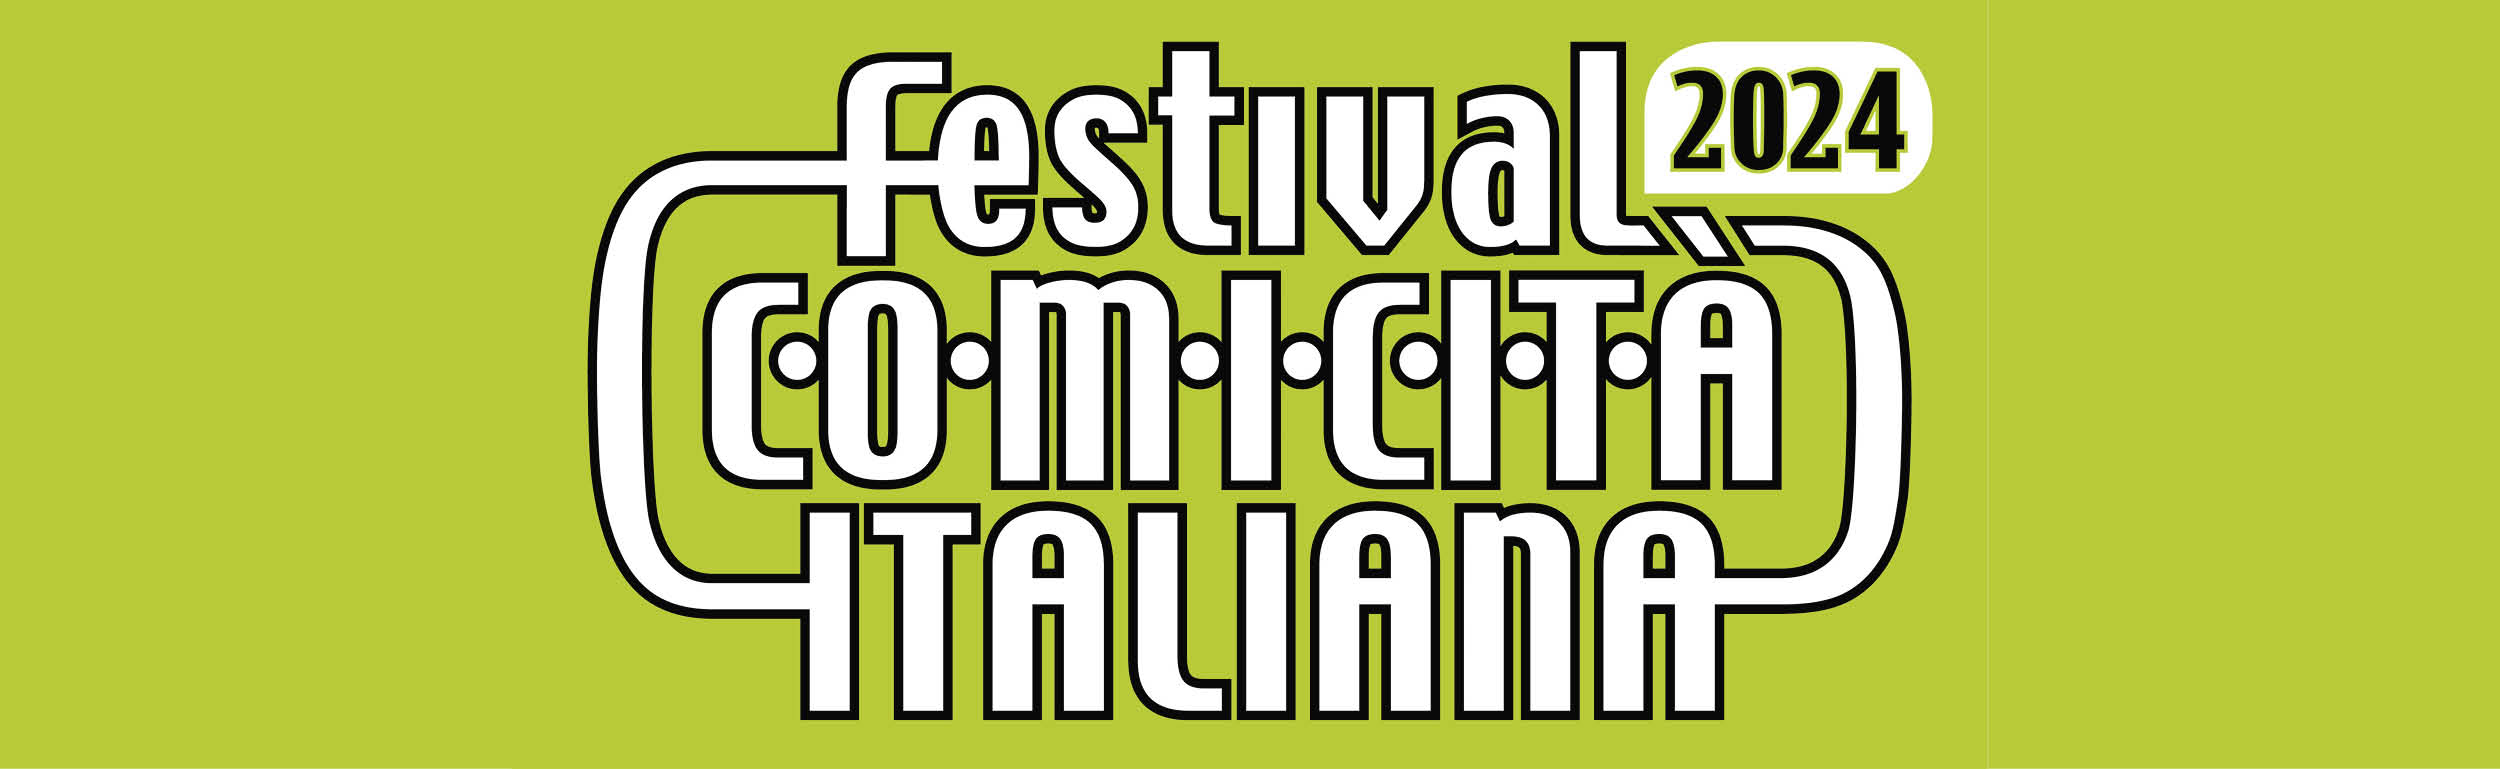 Festival comicità-2.jpg